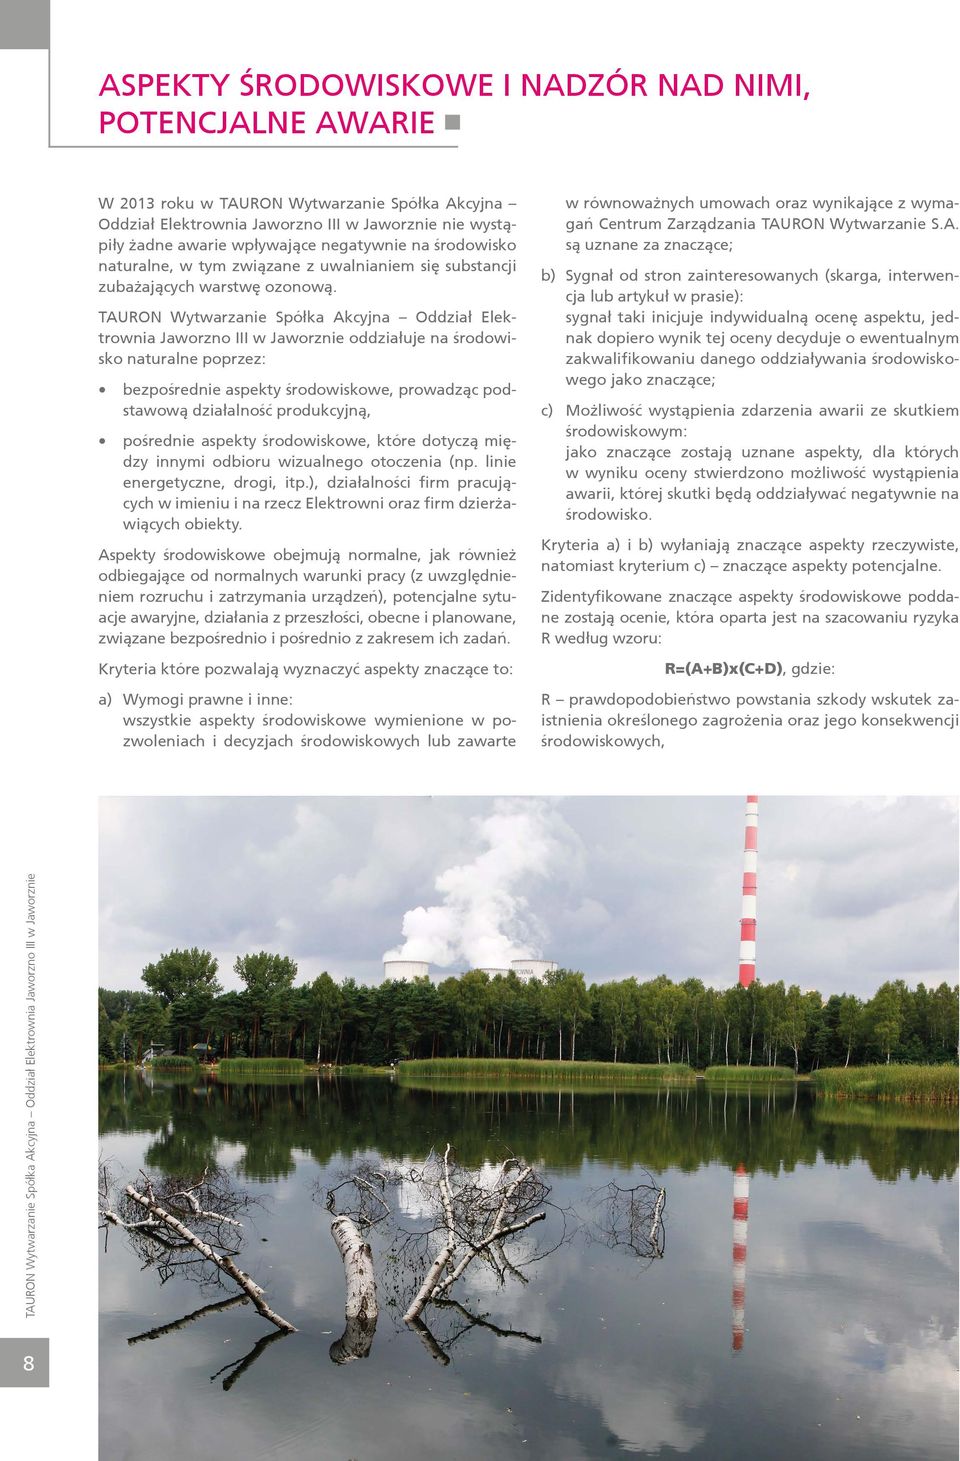 TAURON Wytwarzanie Spółka Akcyjna Oddział Elektrownia Jaworzno III w Jaworznie oddziałuje na środowisko naturalne poprzez: bezpośrednie aspekty środowiskowe, prowadząc podstawową działalność